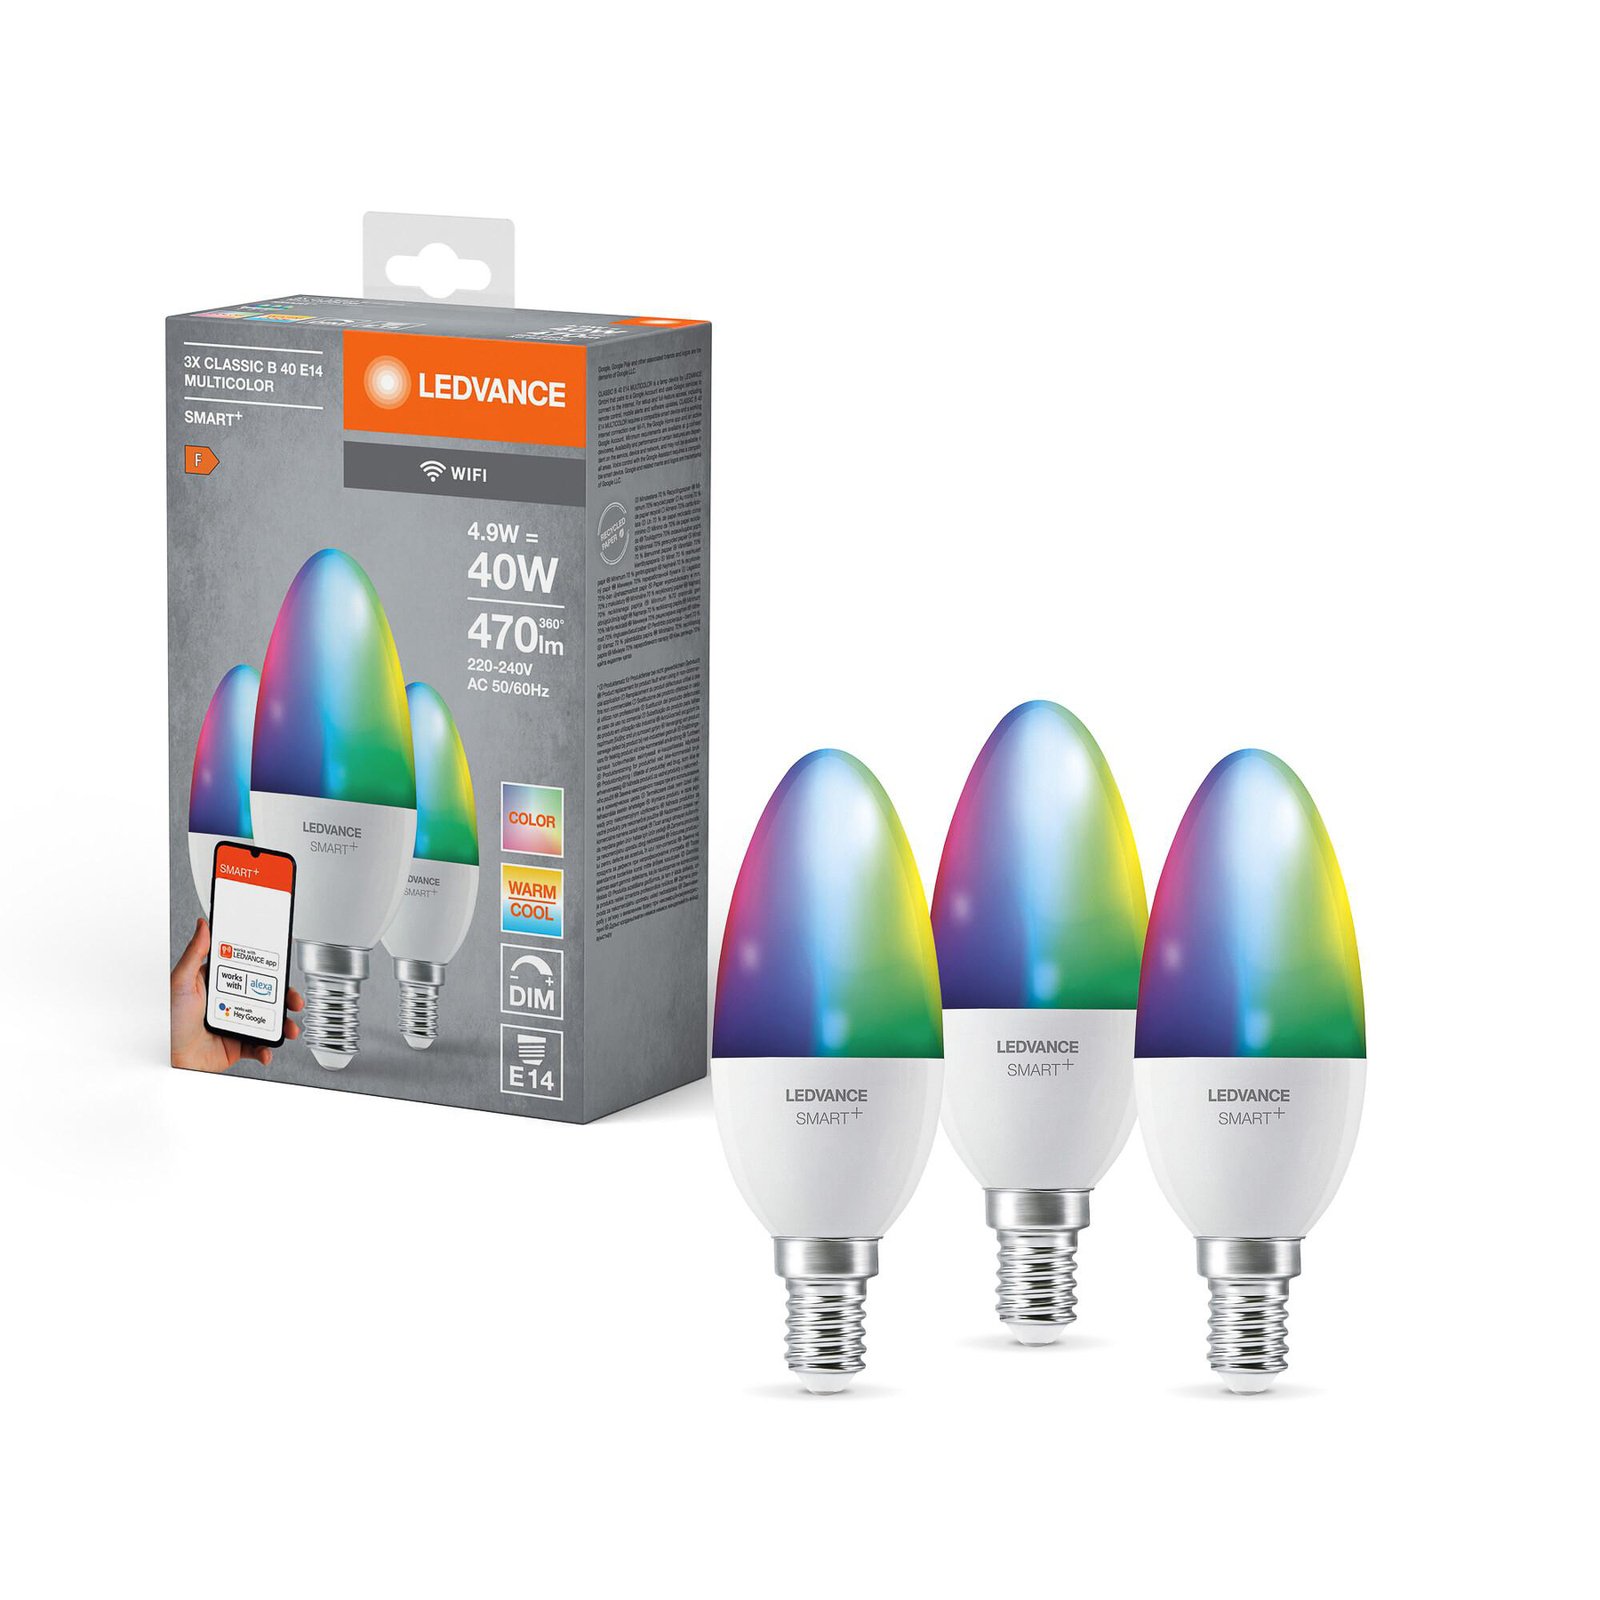 LEDVANCE SMART+ LED, stearinlys, E14, 4,9 W, CCT, RGB, WiFi, 3 enheter